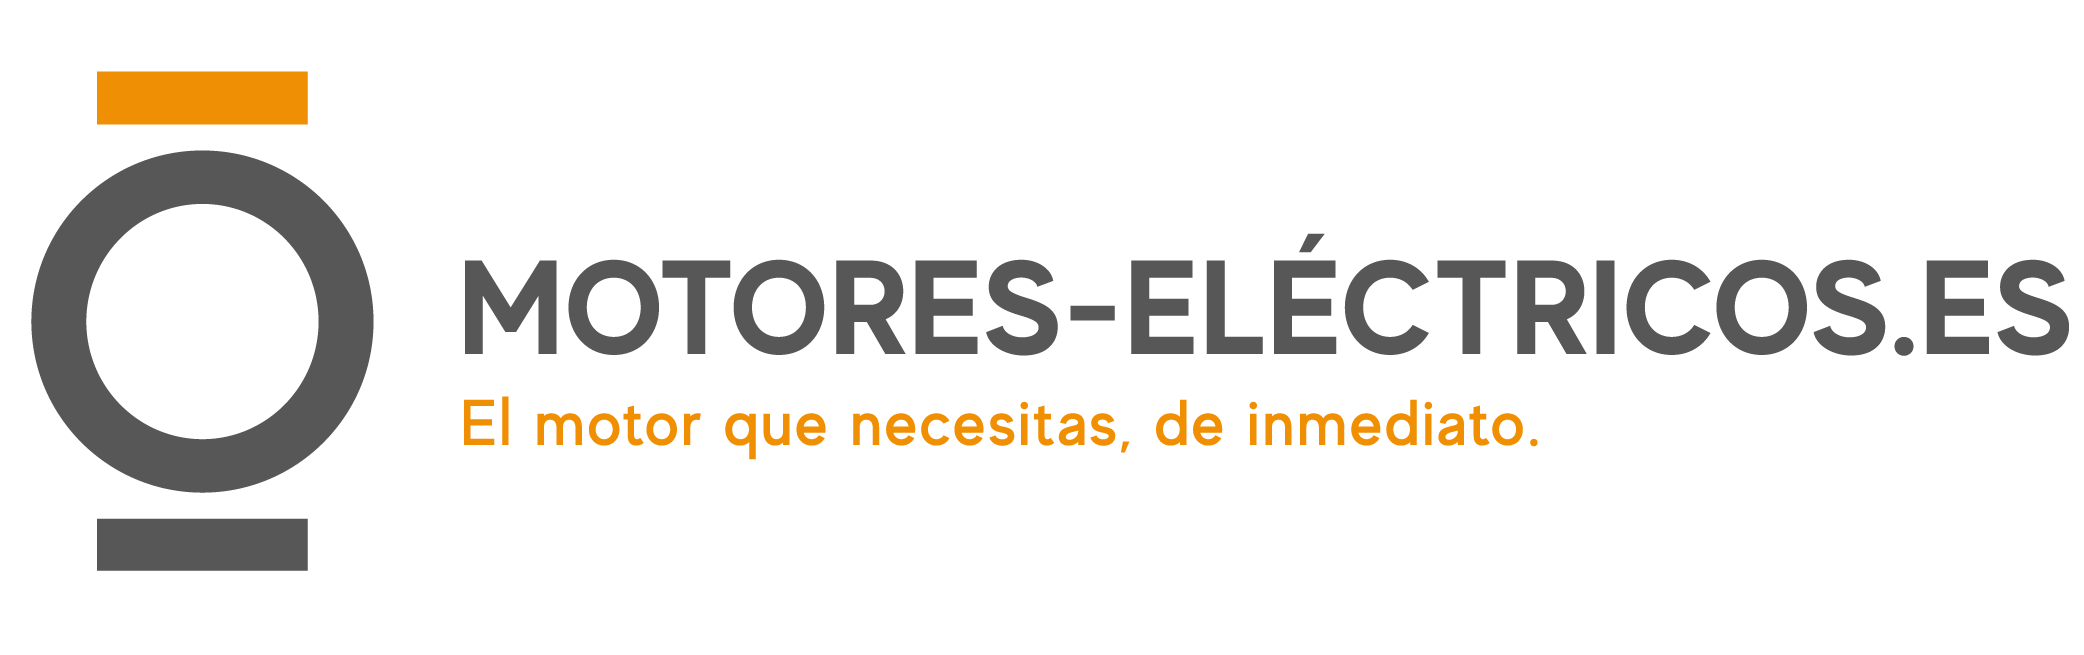 Logotipo de Motores Eléctricos